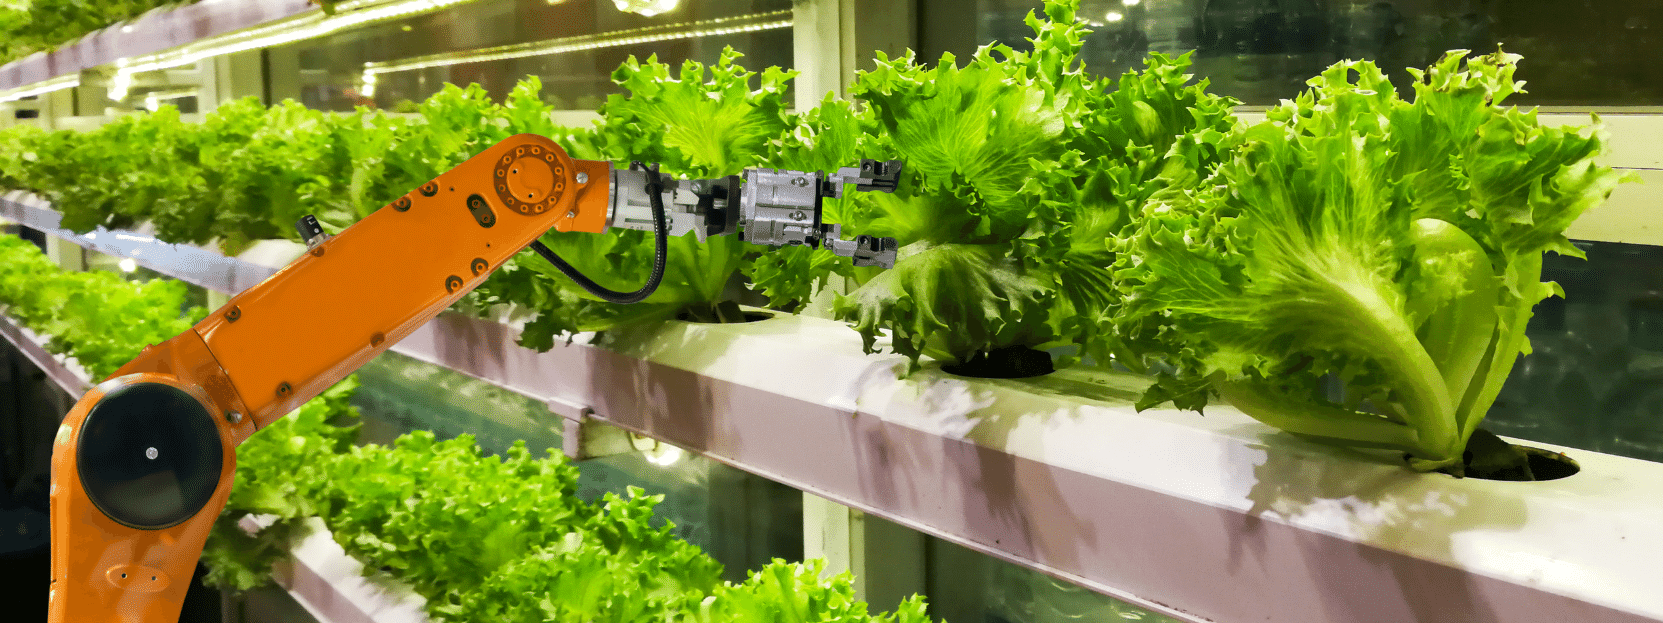 lettuce being grown under indoor lighting